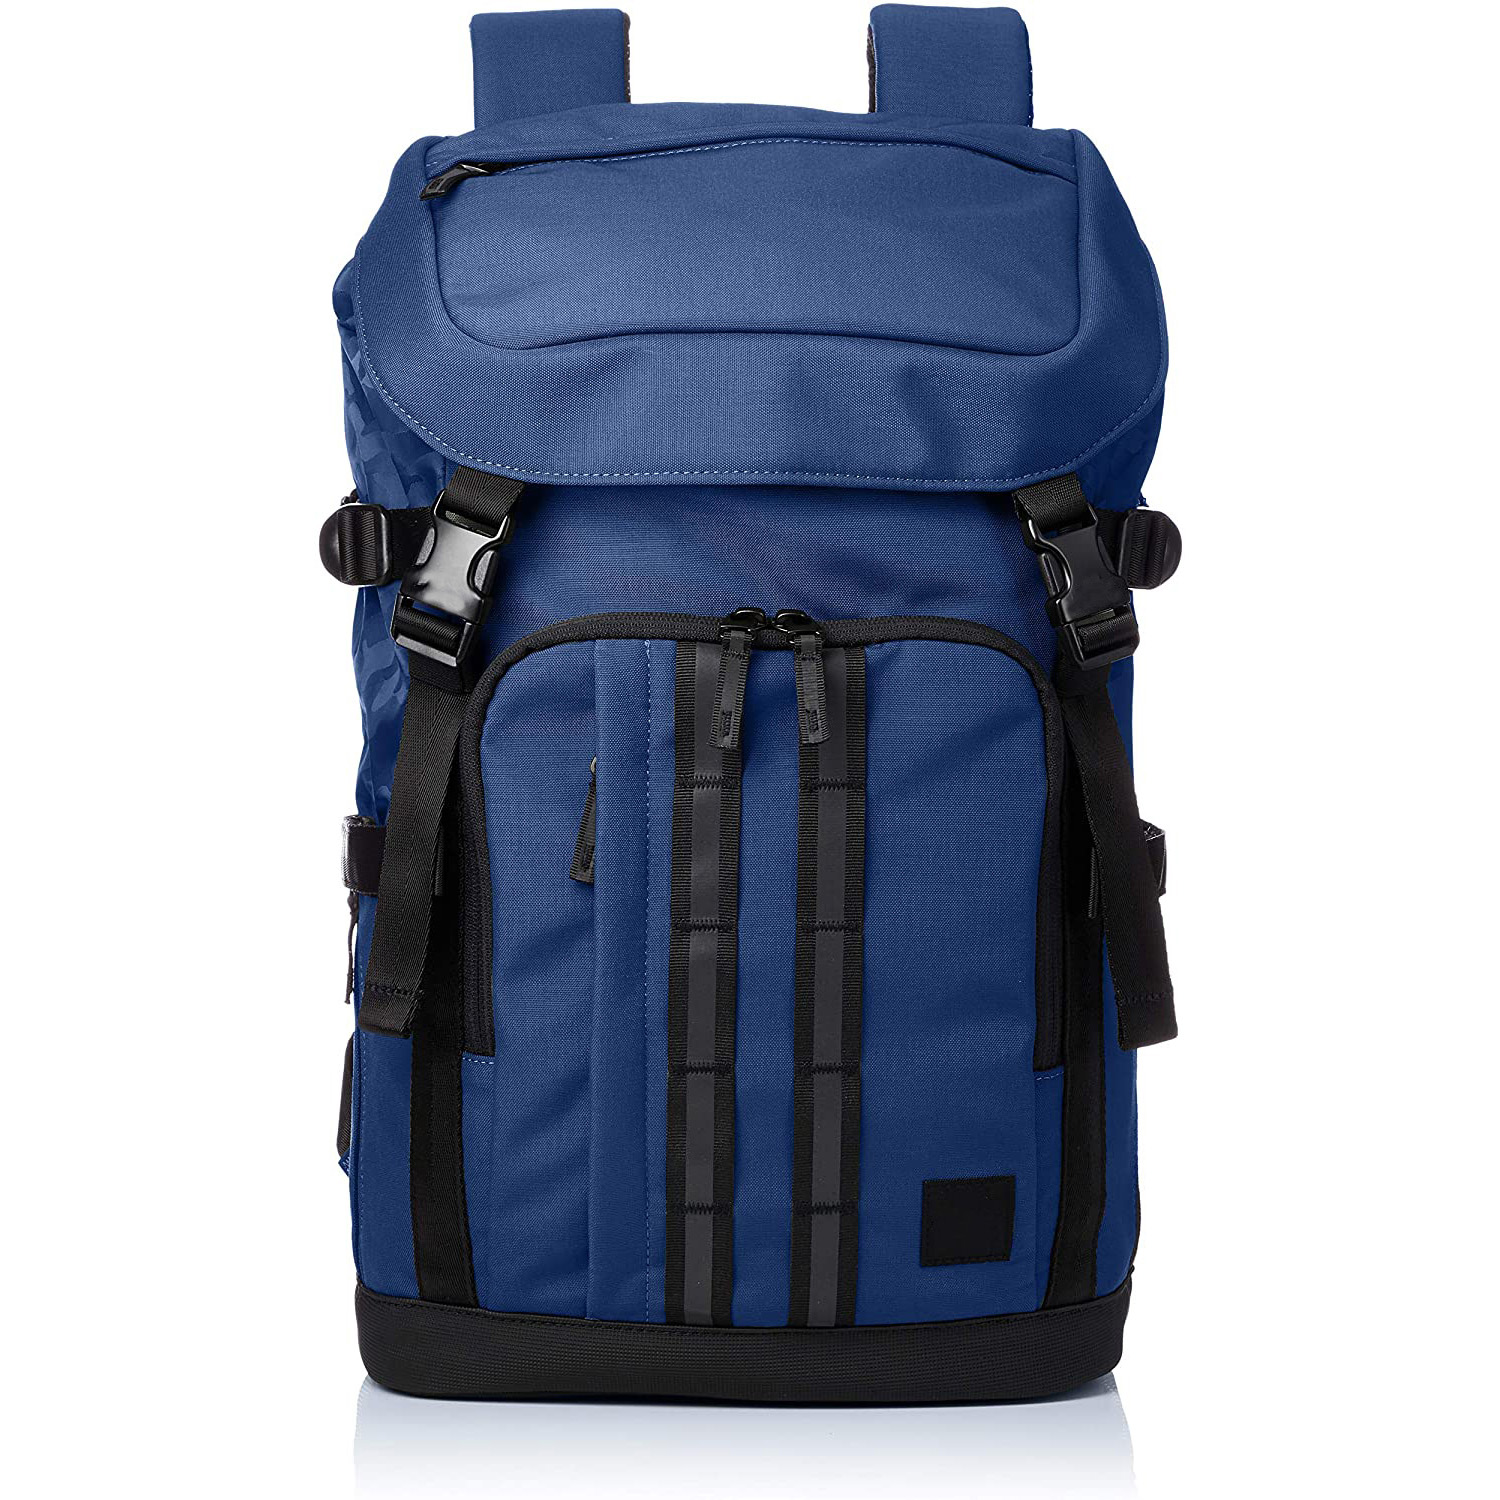 Производитель из Китая OEM&ODM сервис спортивный спортивный рюкзак на шнурке спортивный рюкзак для ноутбука сумка для мужчин